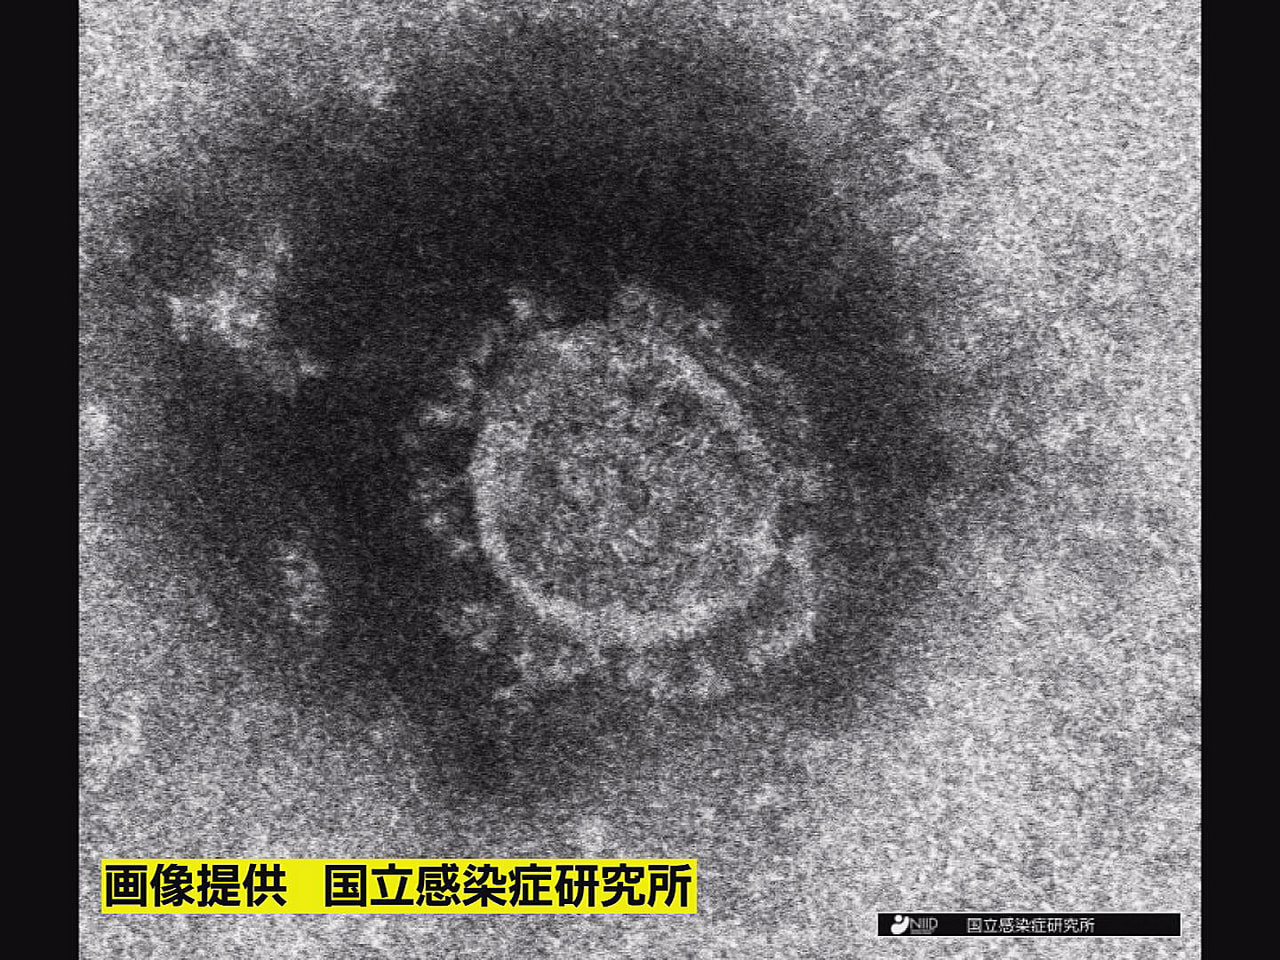 岐阜県は２１日、新型コロナウイルスの新規感染者が１７５人確認されたと発表しました...